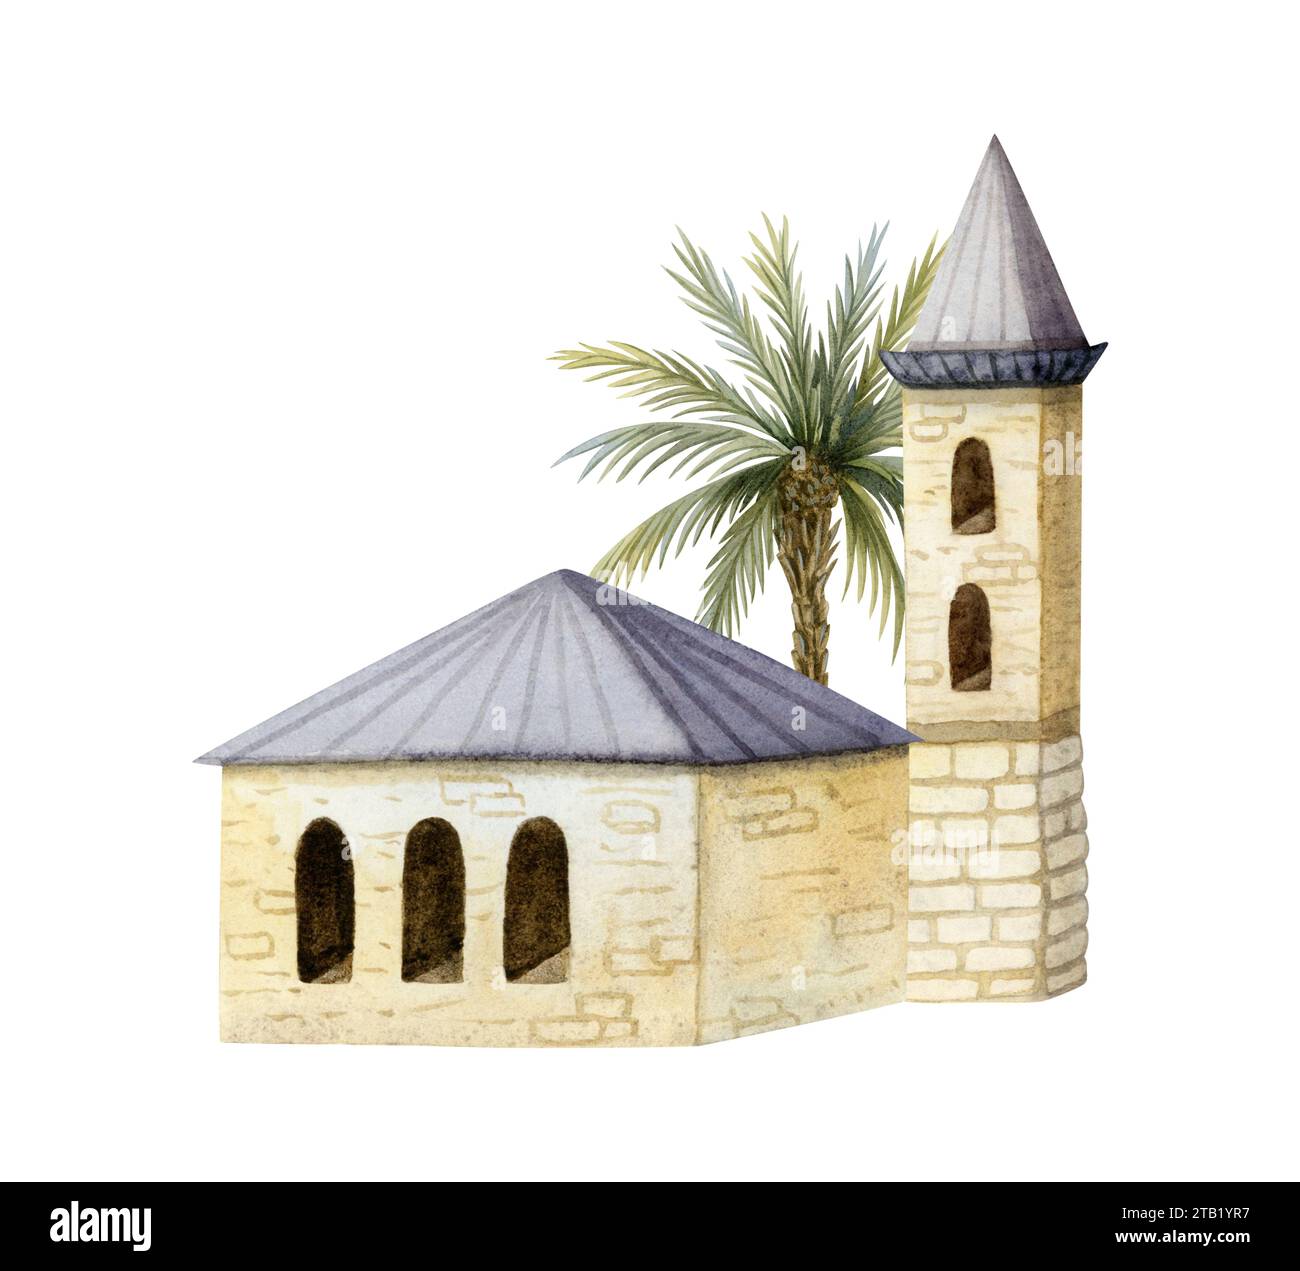 Vieilles maisons arabes avec illustration d'aquarelle de palmier. Tour beige oriental et maison. Architecture méditerranéenne Banque D'Images